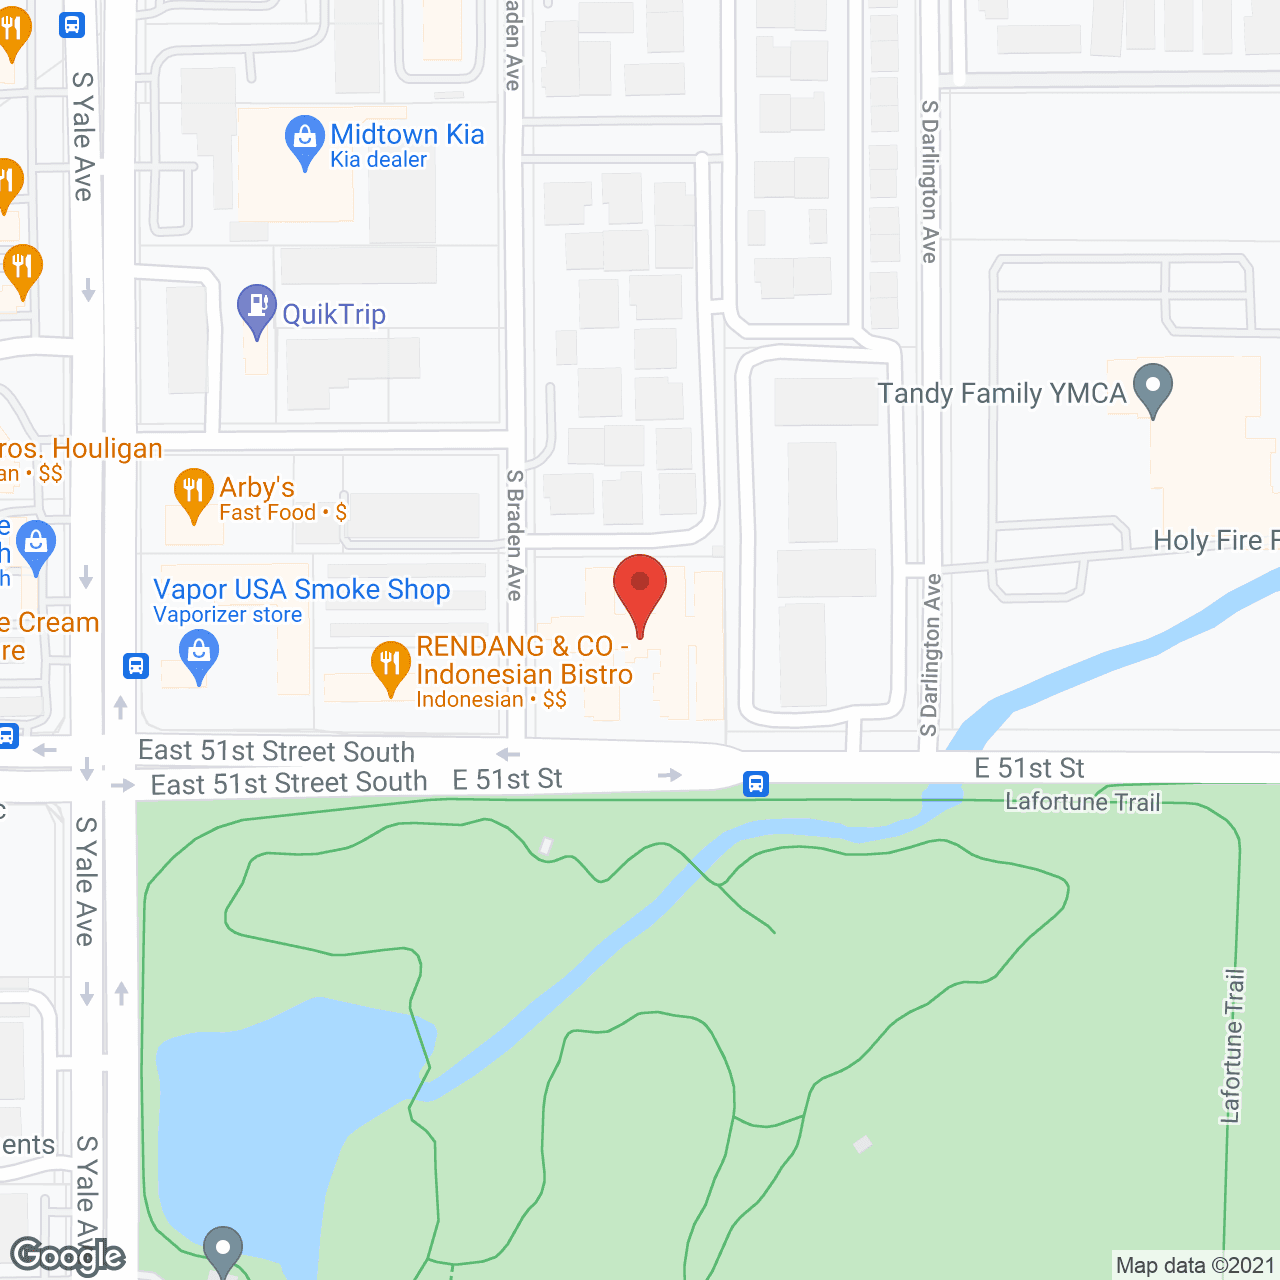 Parks Edge Nursing & Rehab Center in google map